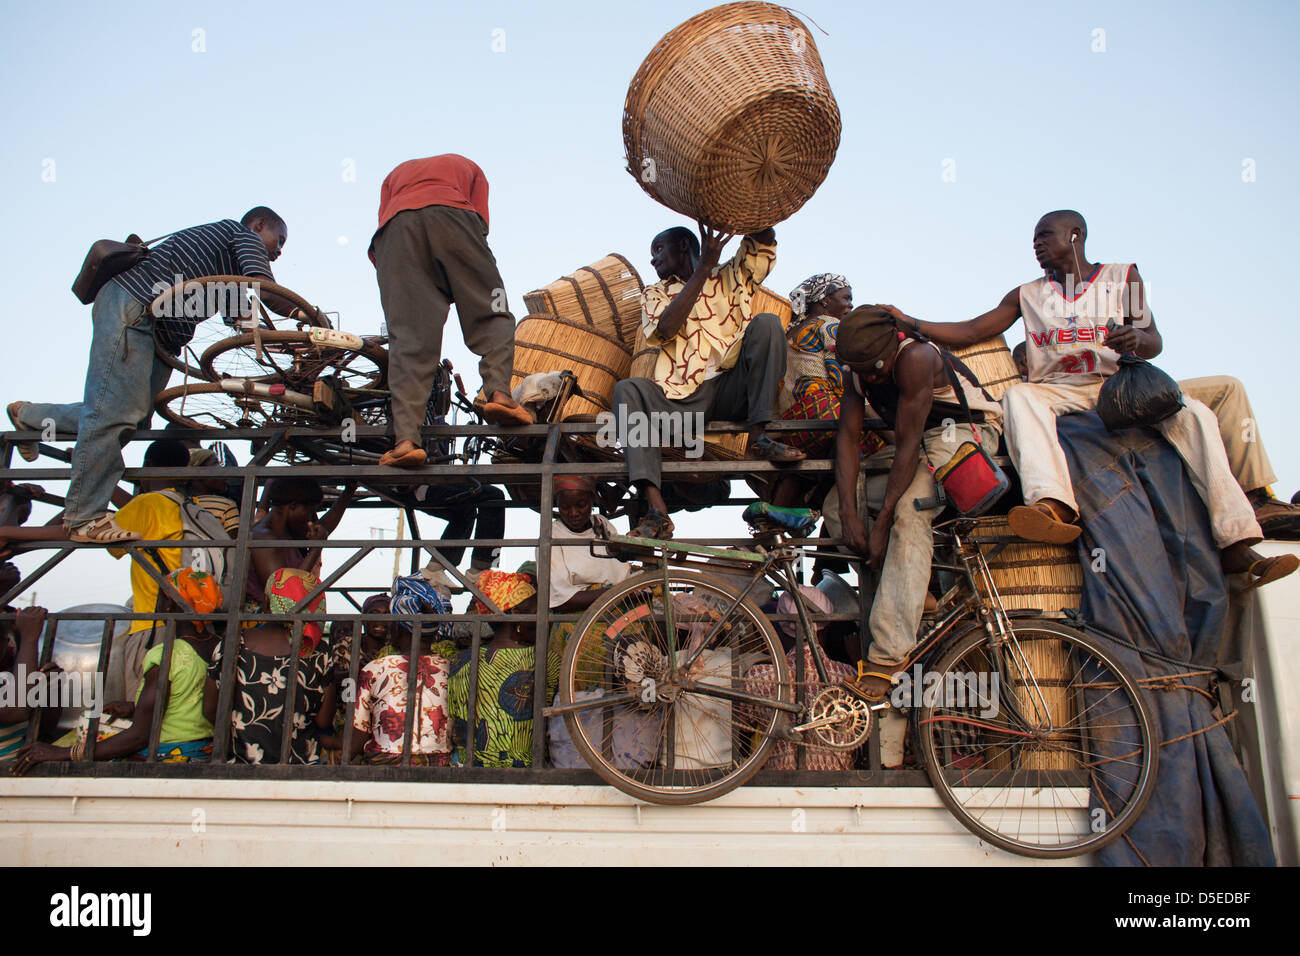 Un bus chargé avec les gens se prépare à quitter Nandom, dans le nord du Ghana, pour le trajet vers le sud. Banque D'Images